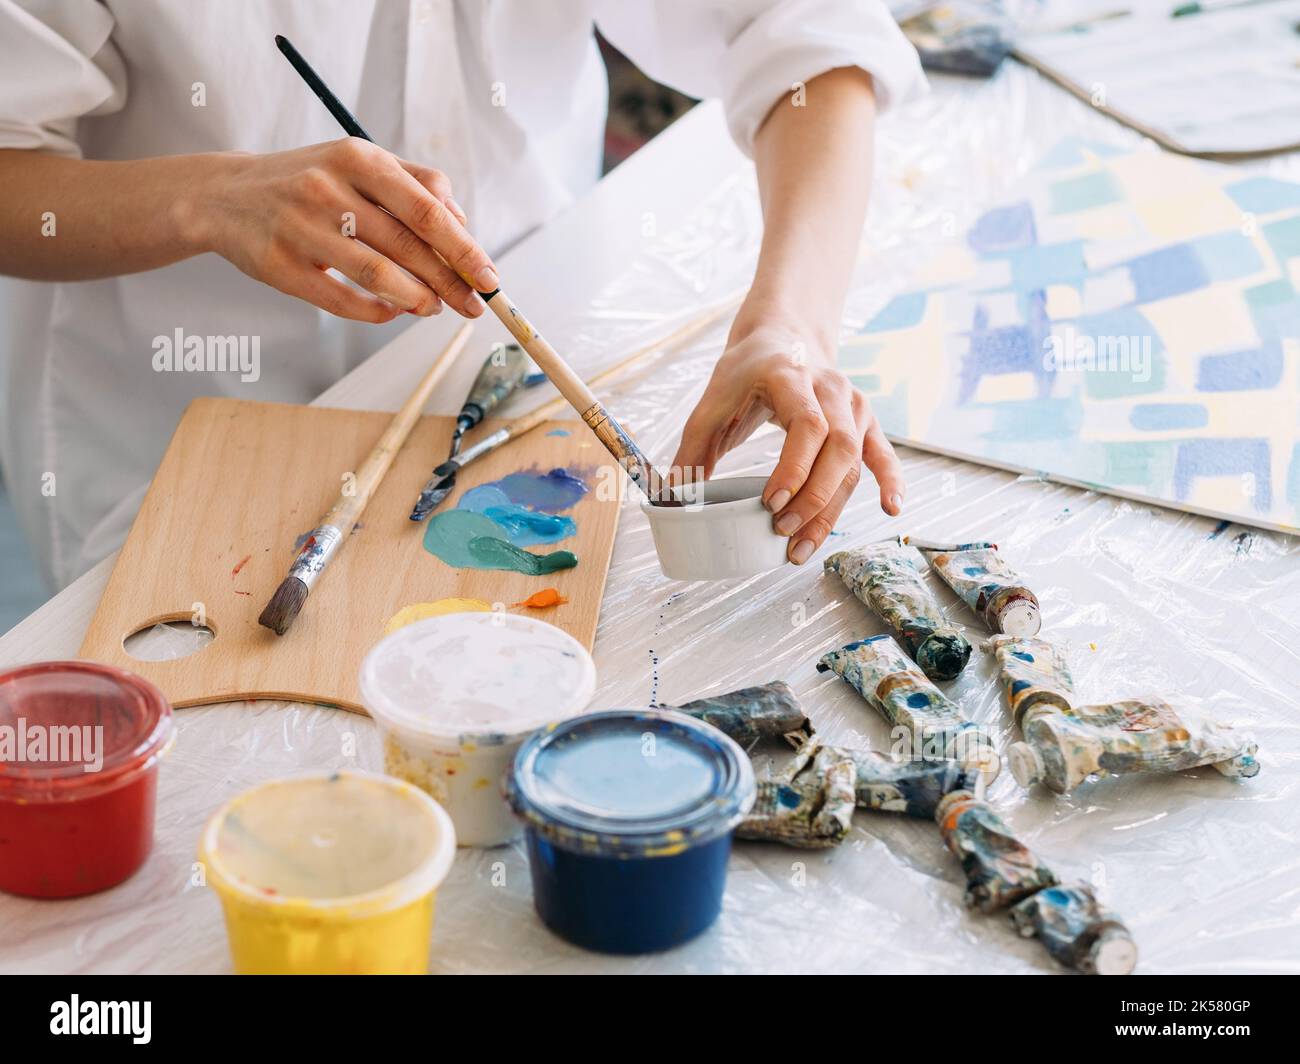 Kunst Hobby Malerei liefert Hände mischen Farbe Stockfoto